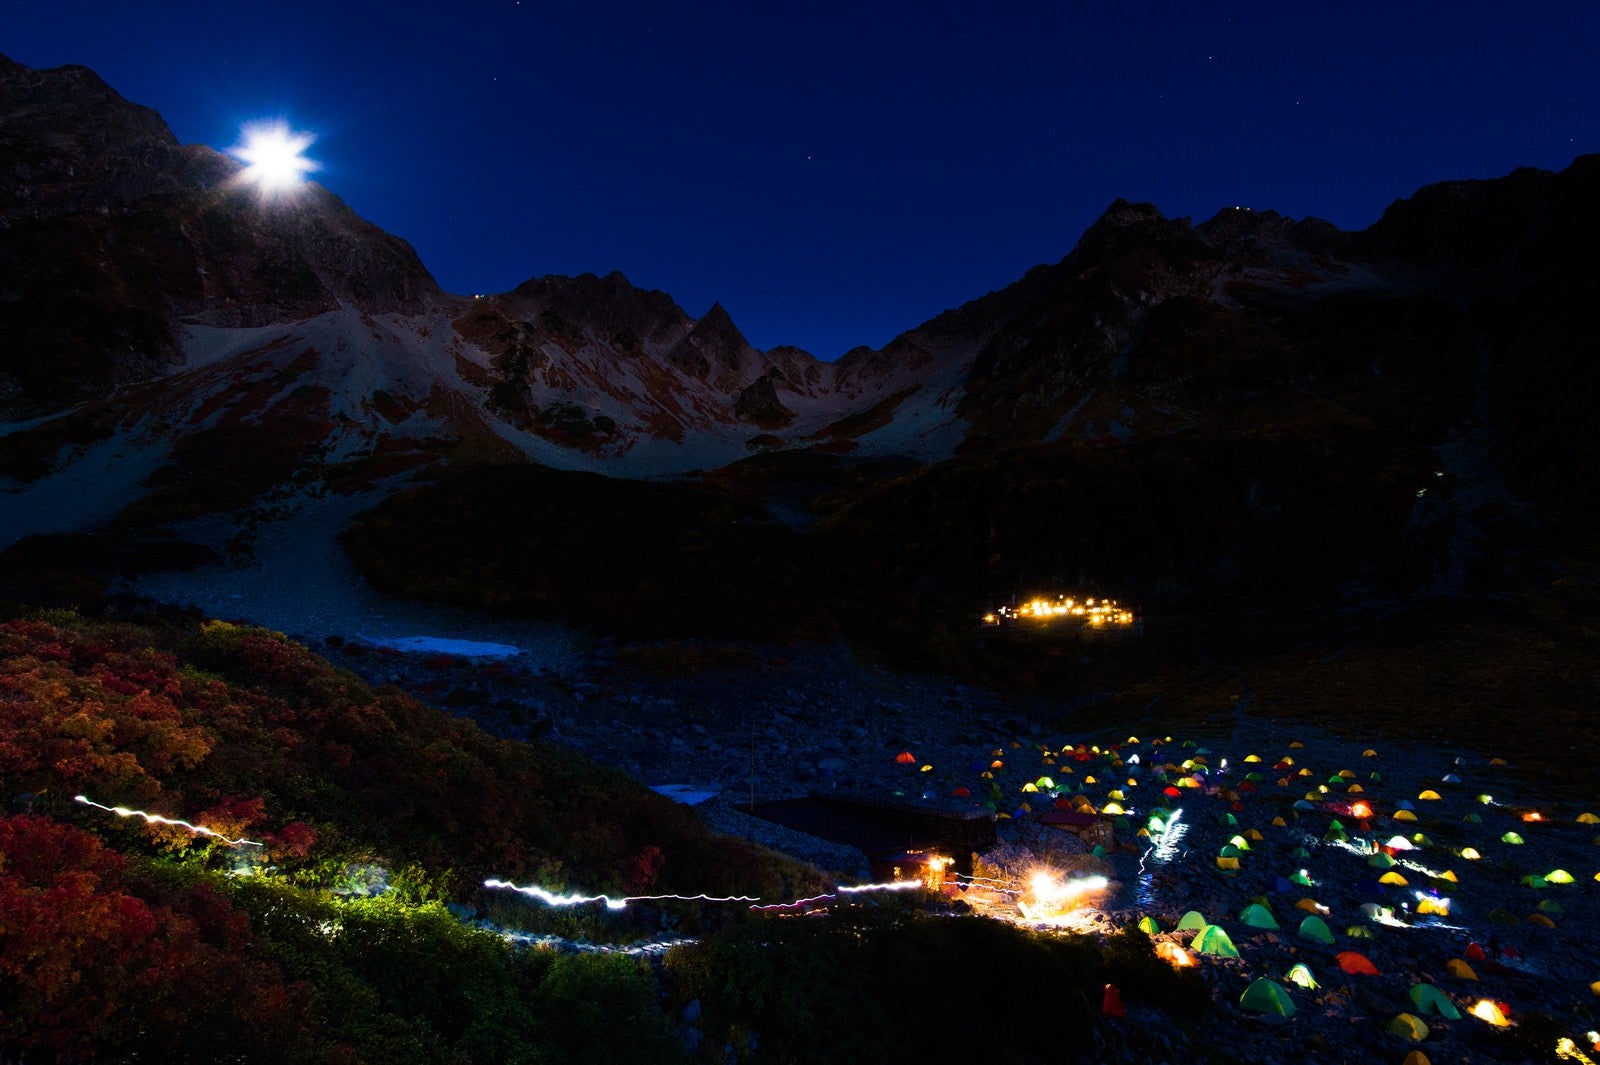 「涸沢カールのテント村と月光ダイアモンド奥穂高岳」の写真